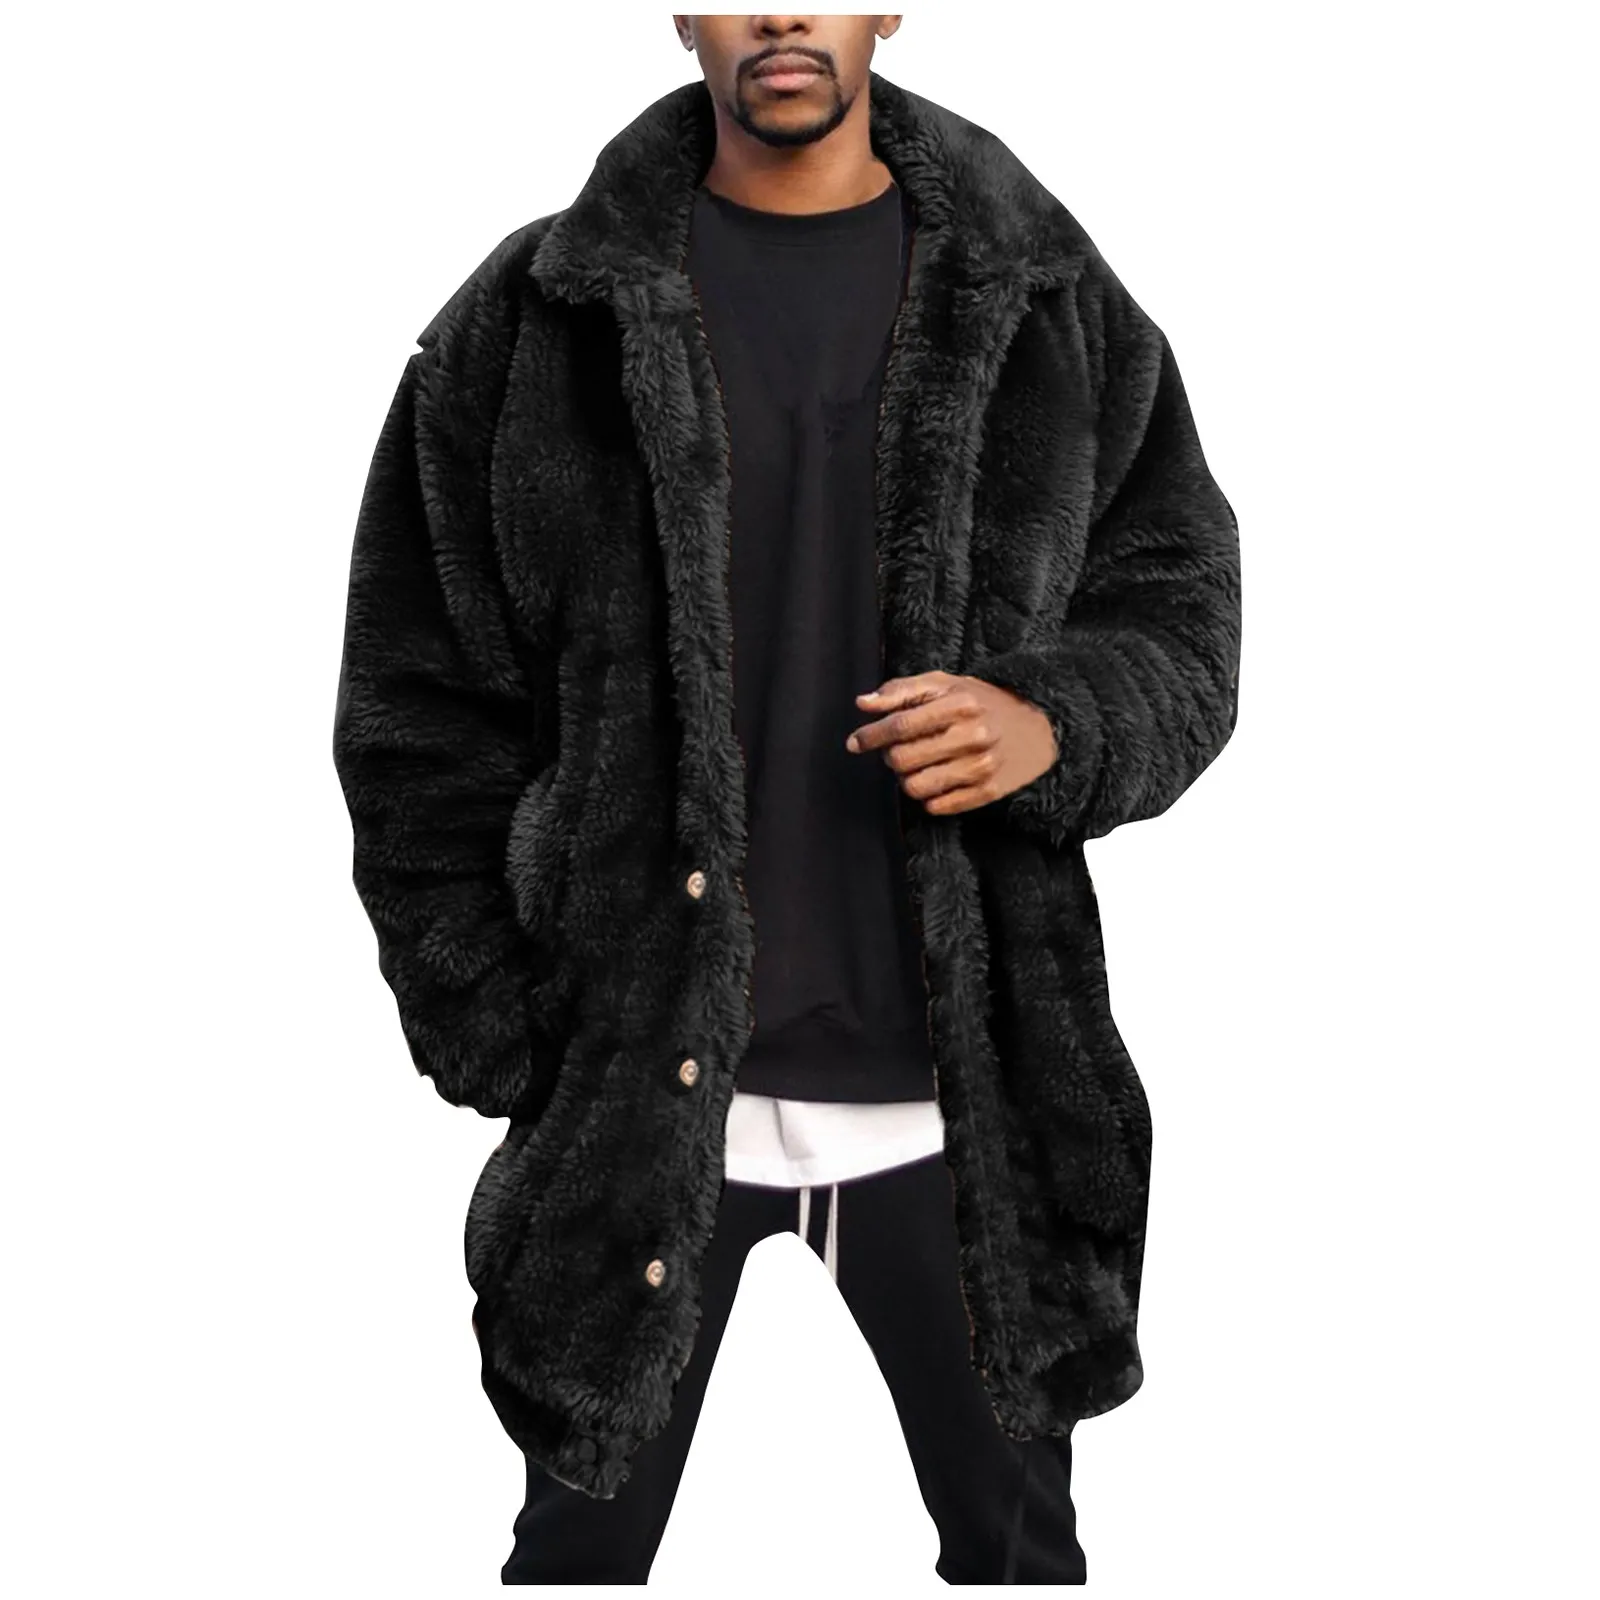 Mantel wol kualitas tinggi untuk wanita baru musim dingin mantel luar wol hangat longgar untuk pria mantel bulu palsu modis kasual mewah pakaian luar panjang sobret Masculino